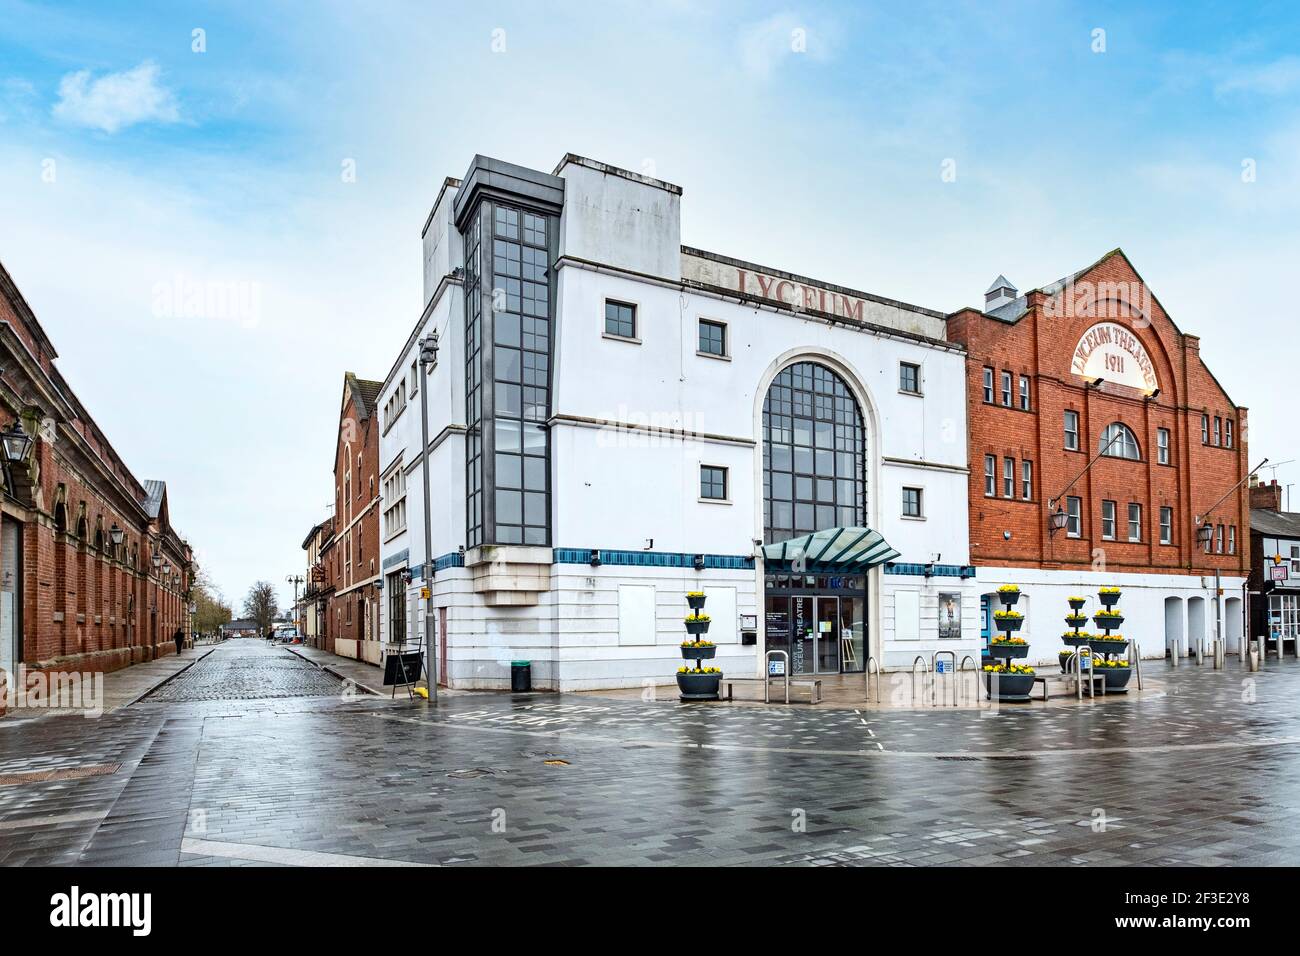 Théâtre Lyceum avec la salle de marché rénovée sur la gauche À Crewe Cheshire Royaume-Uni Banque D'Images